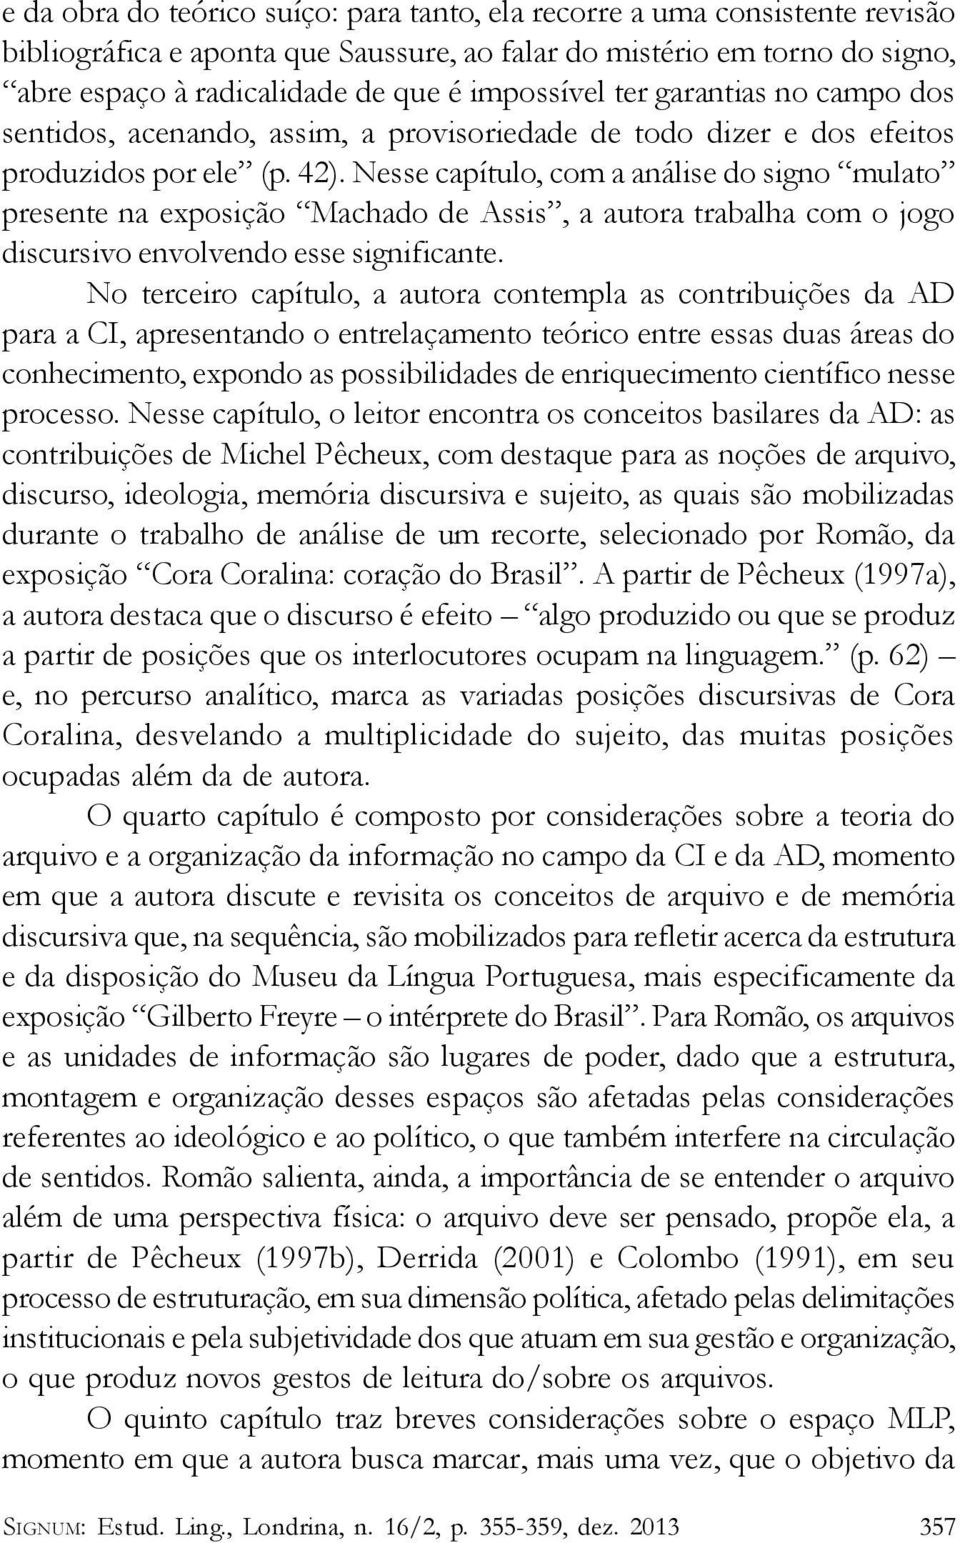 Nesse capítulo, com a análise do signo mulato presente na exposição Machado de Assis, a autora trabalha com o jogo discursivo envolvendo esse significante.